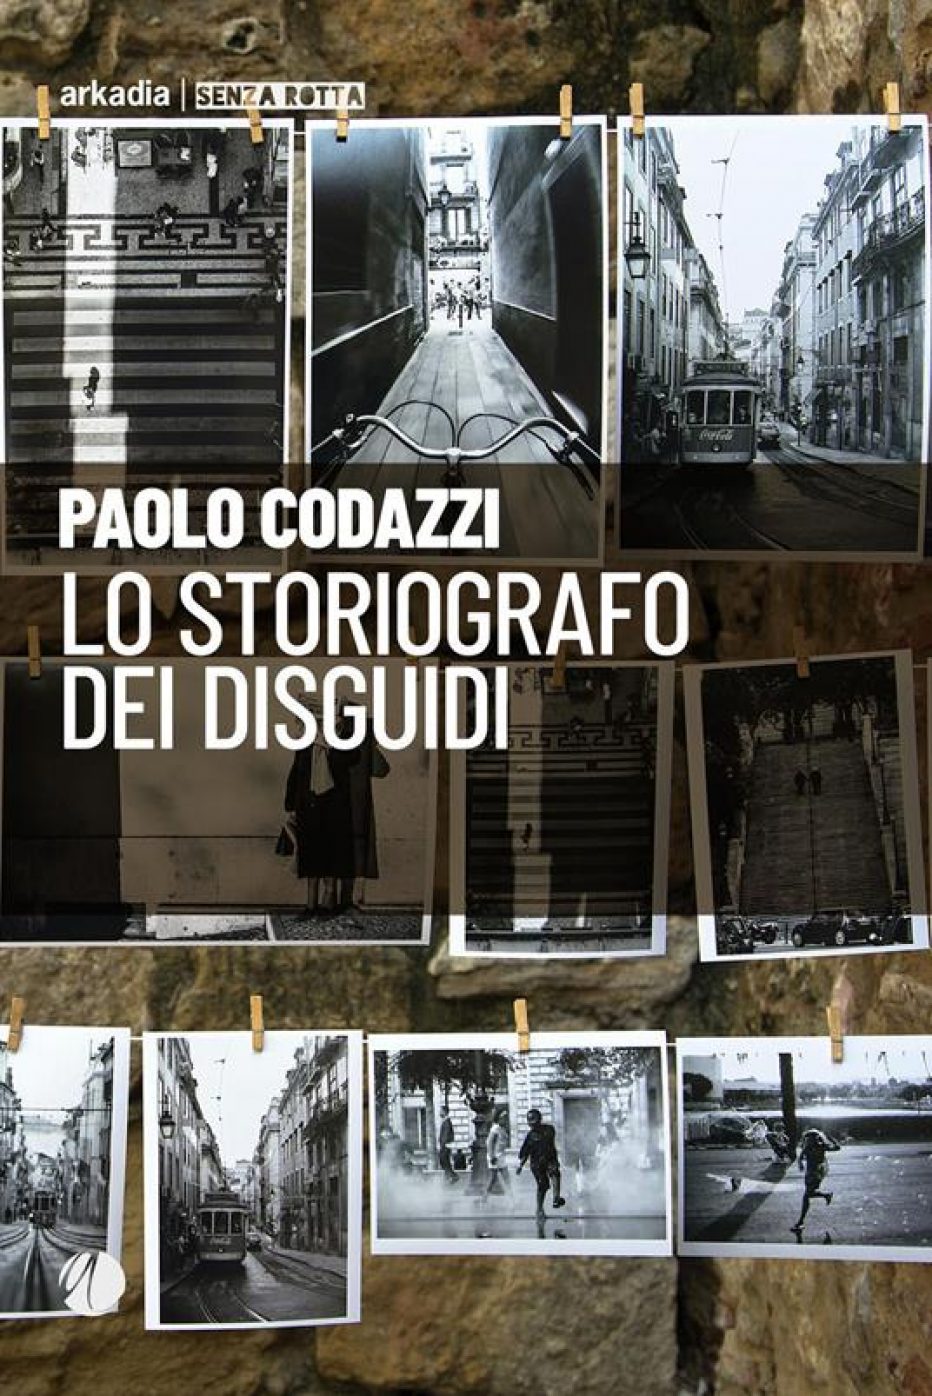 “Lo storiografo dei disguidi” di Paolo Codazzi